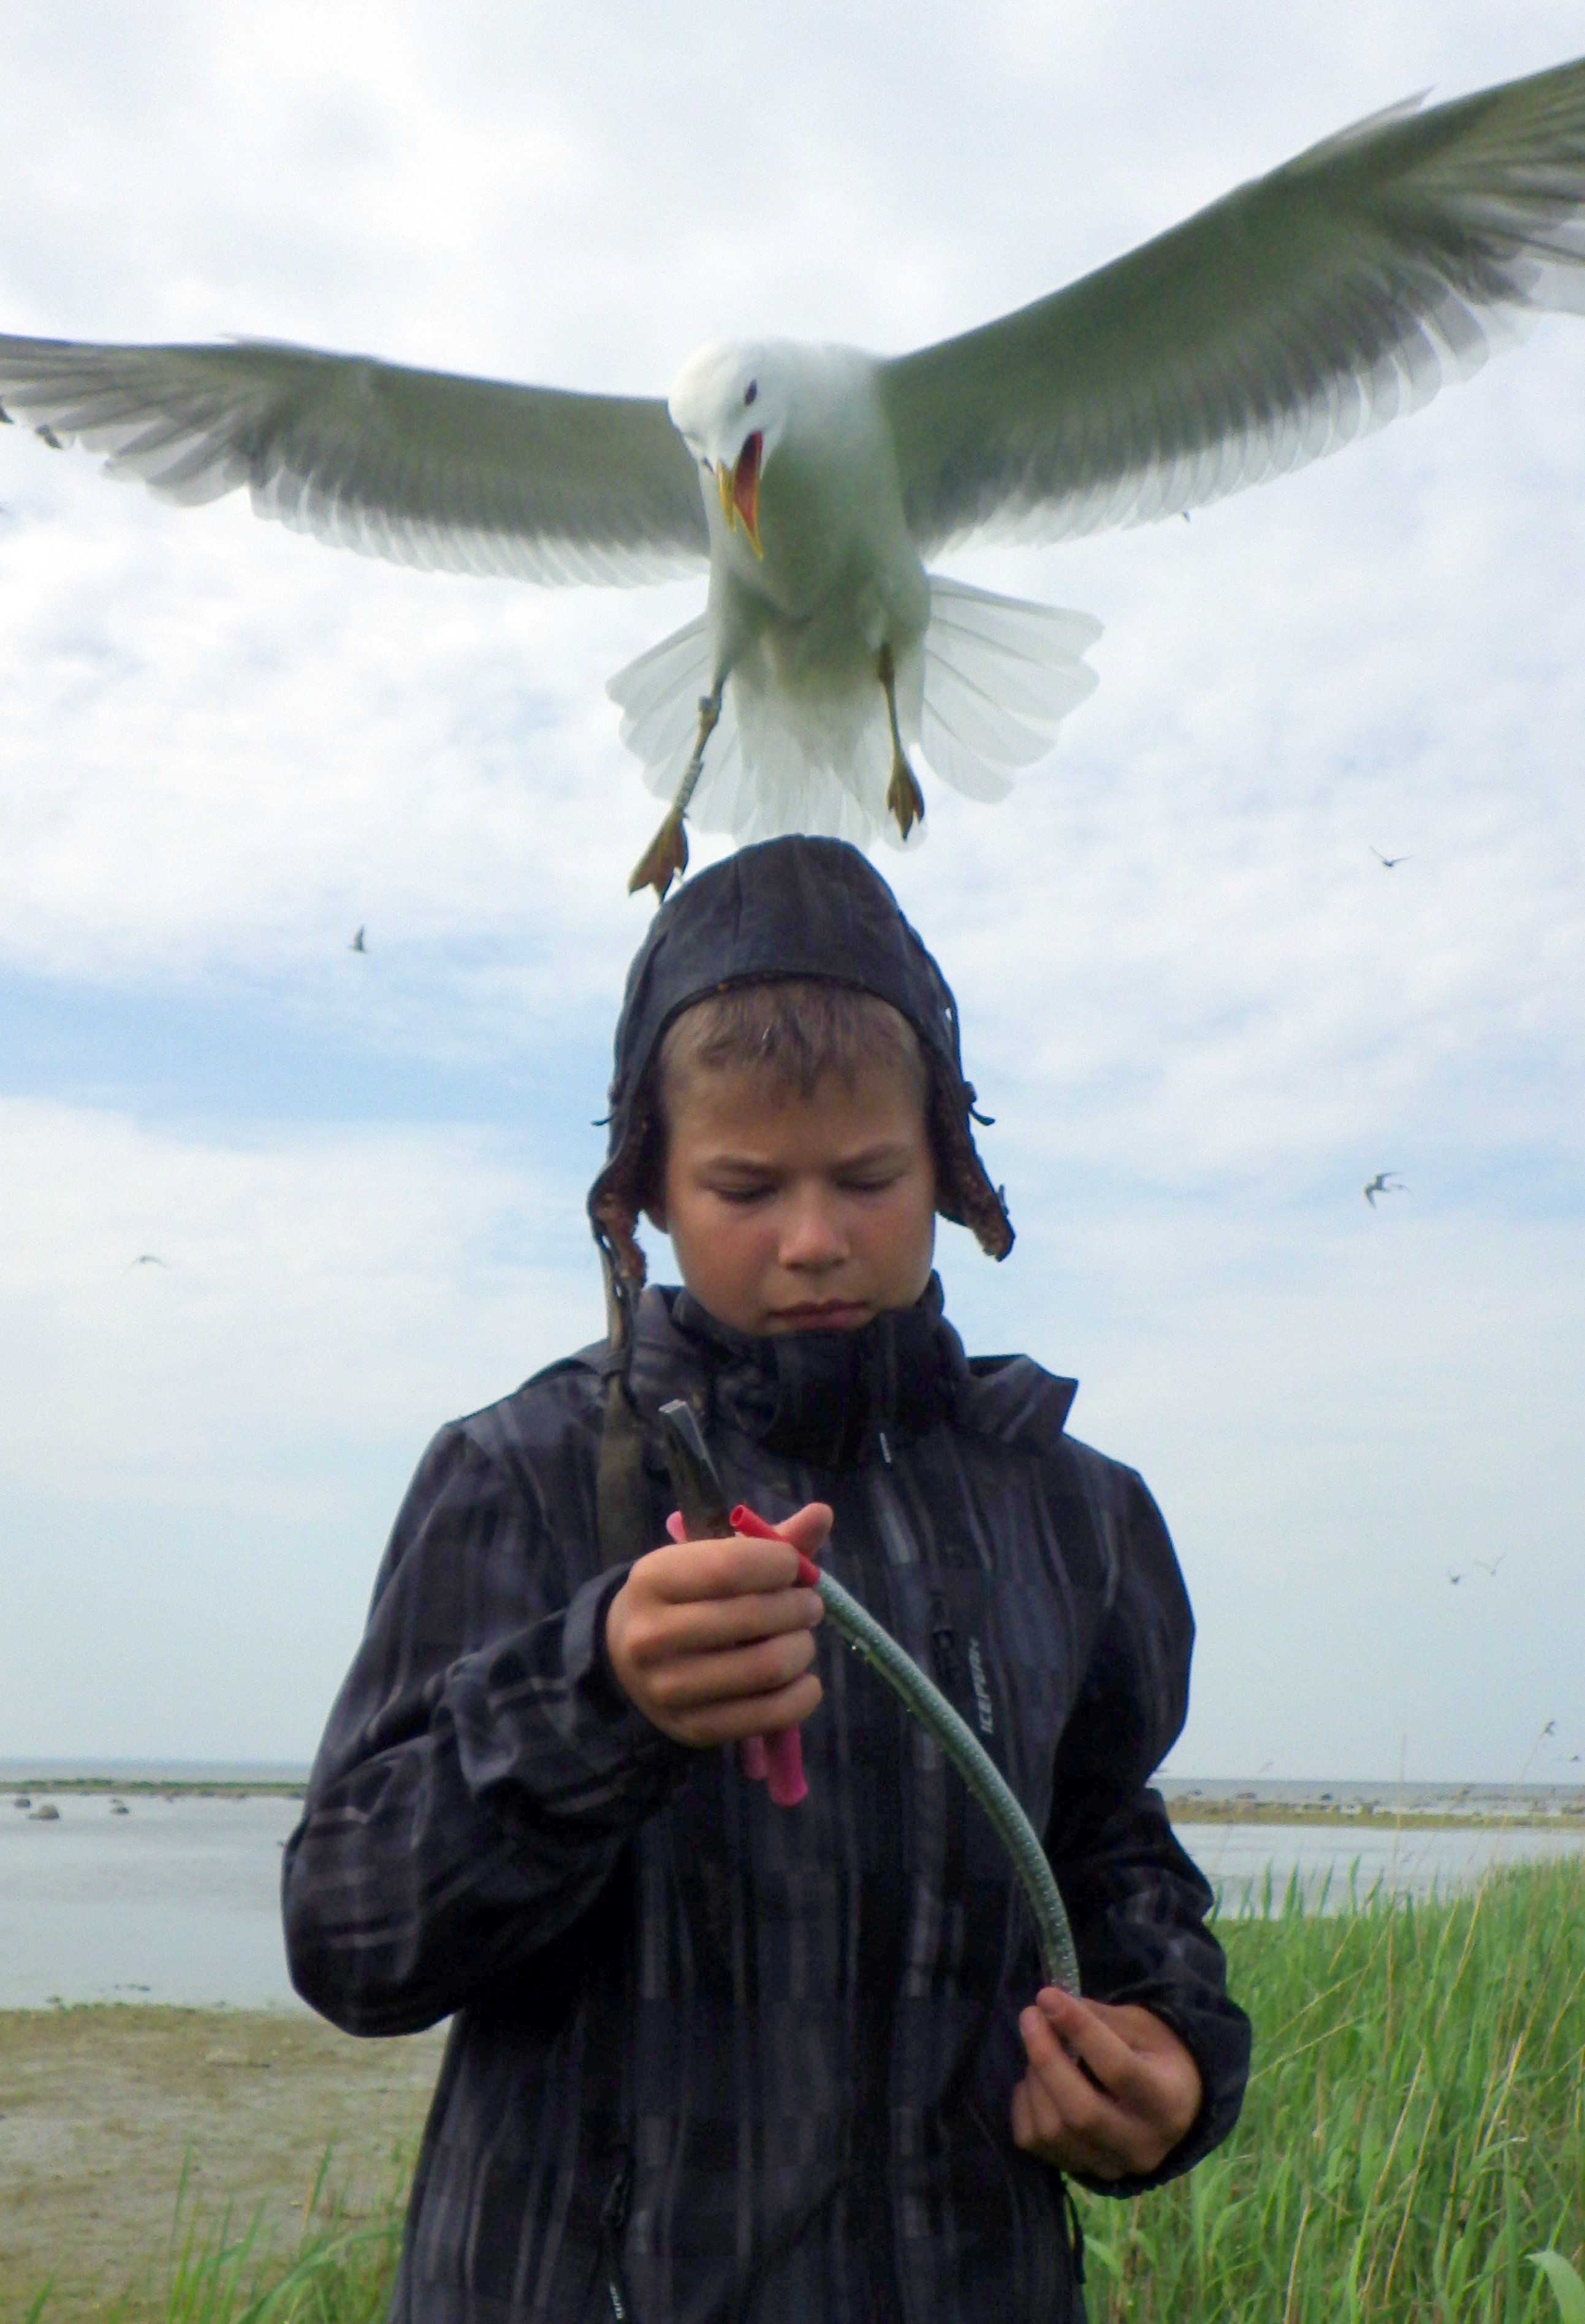 Budding ornithologist